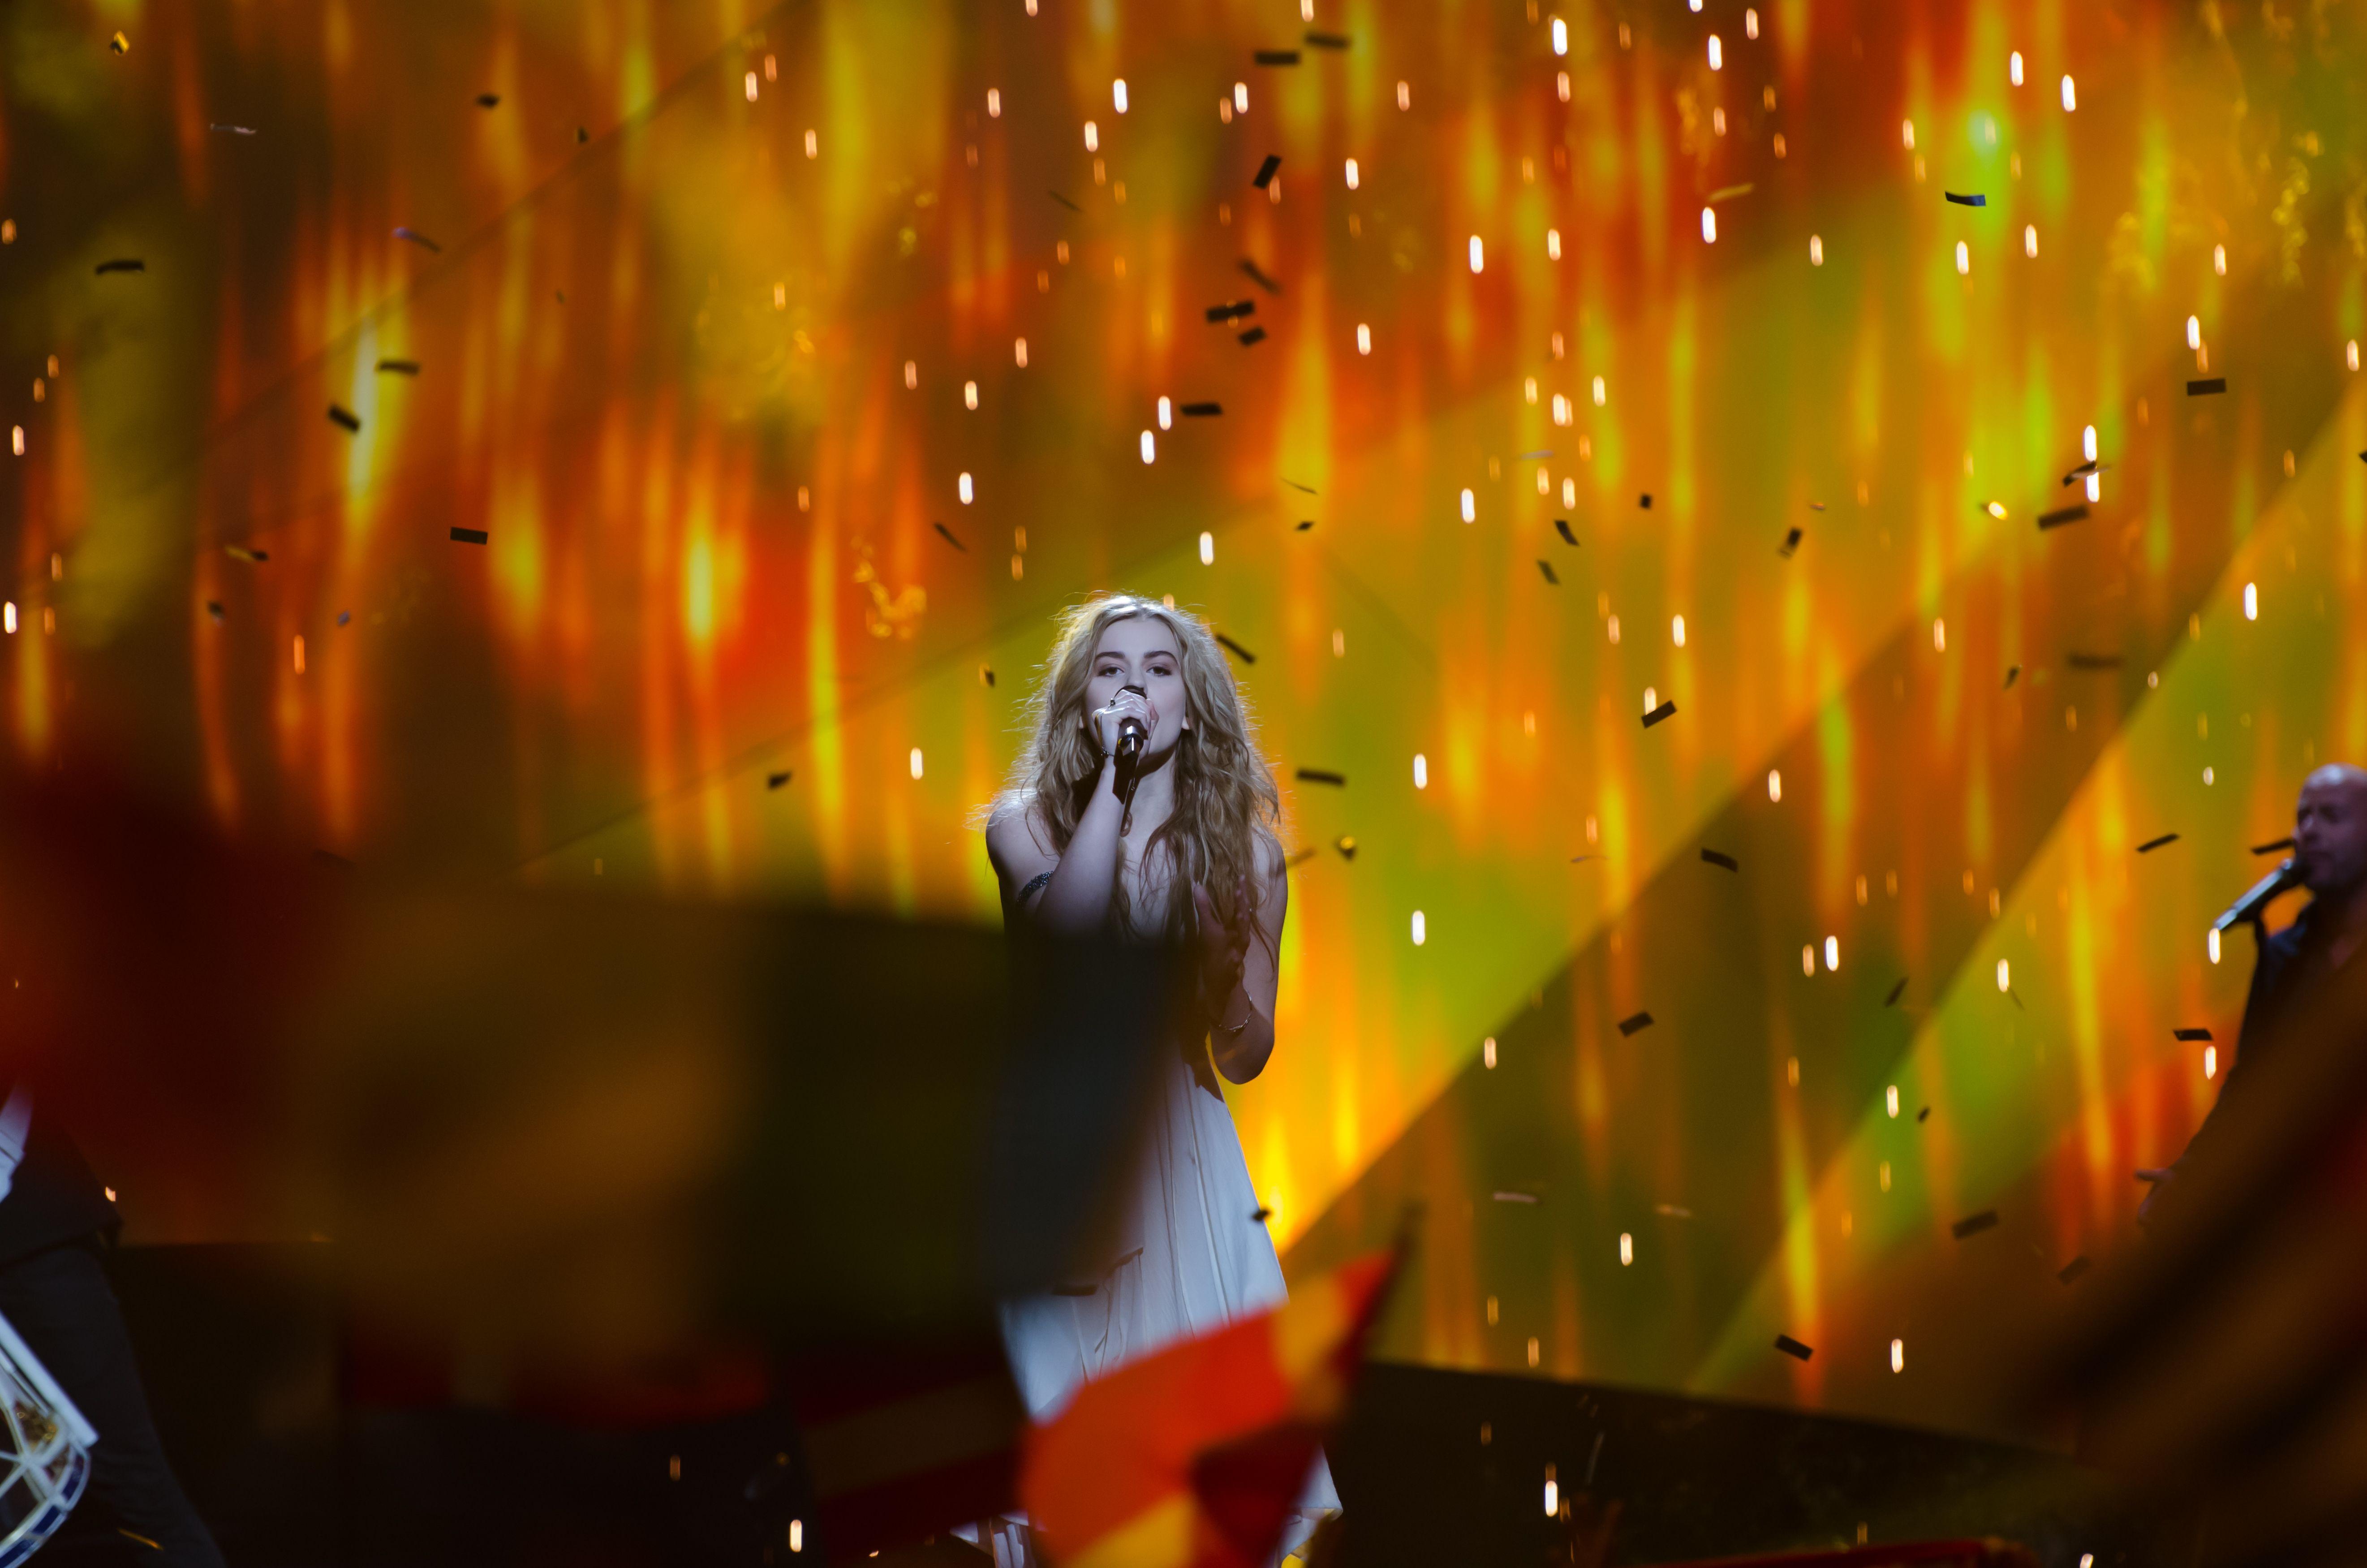 Anuk singing at Eurovision 2013 wallpaper and image